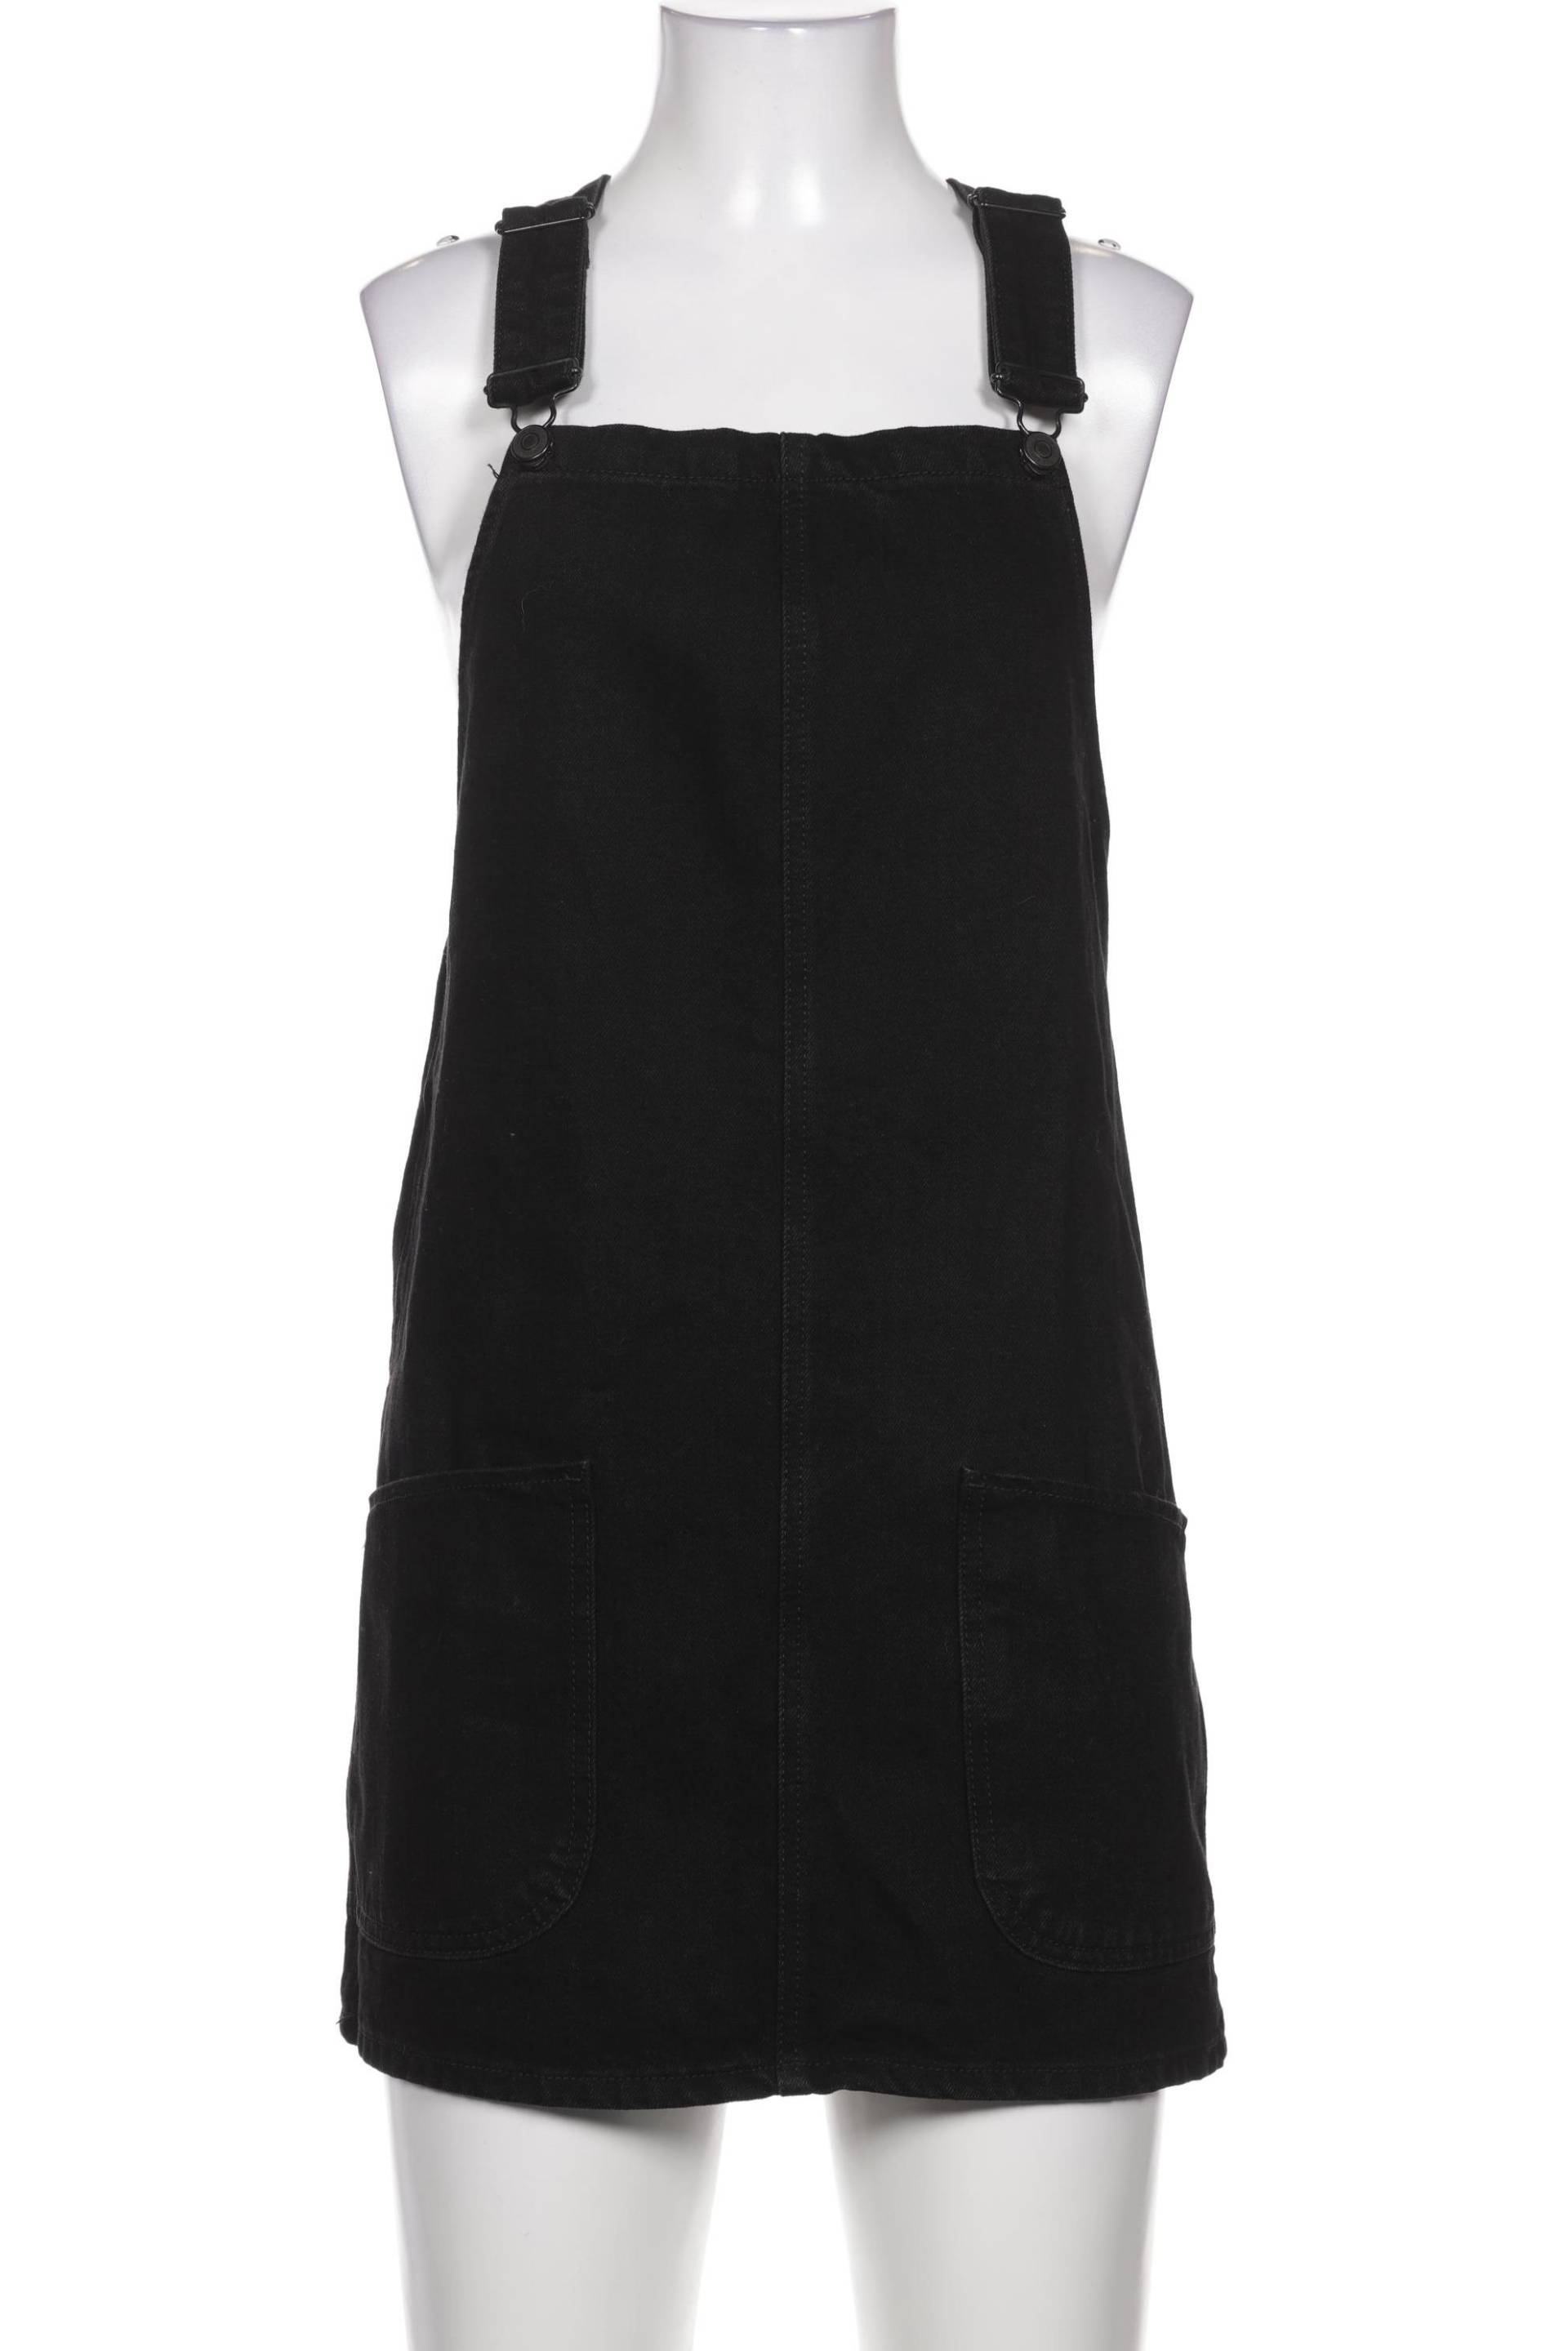 New Look Damen Kleid, schwarz, Gr. 34 von New Look